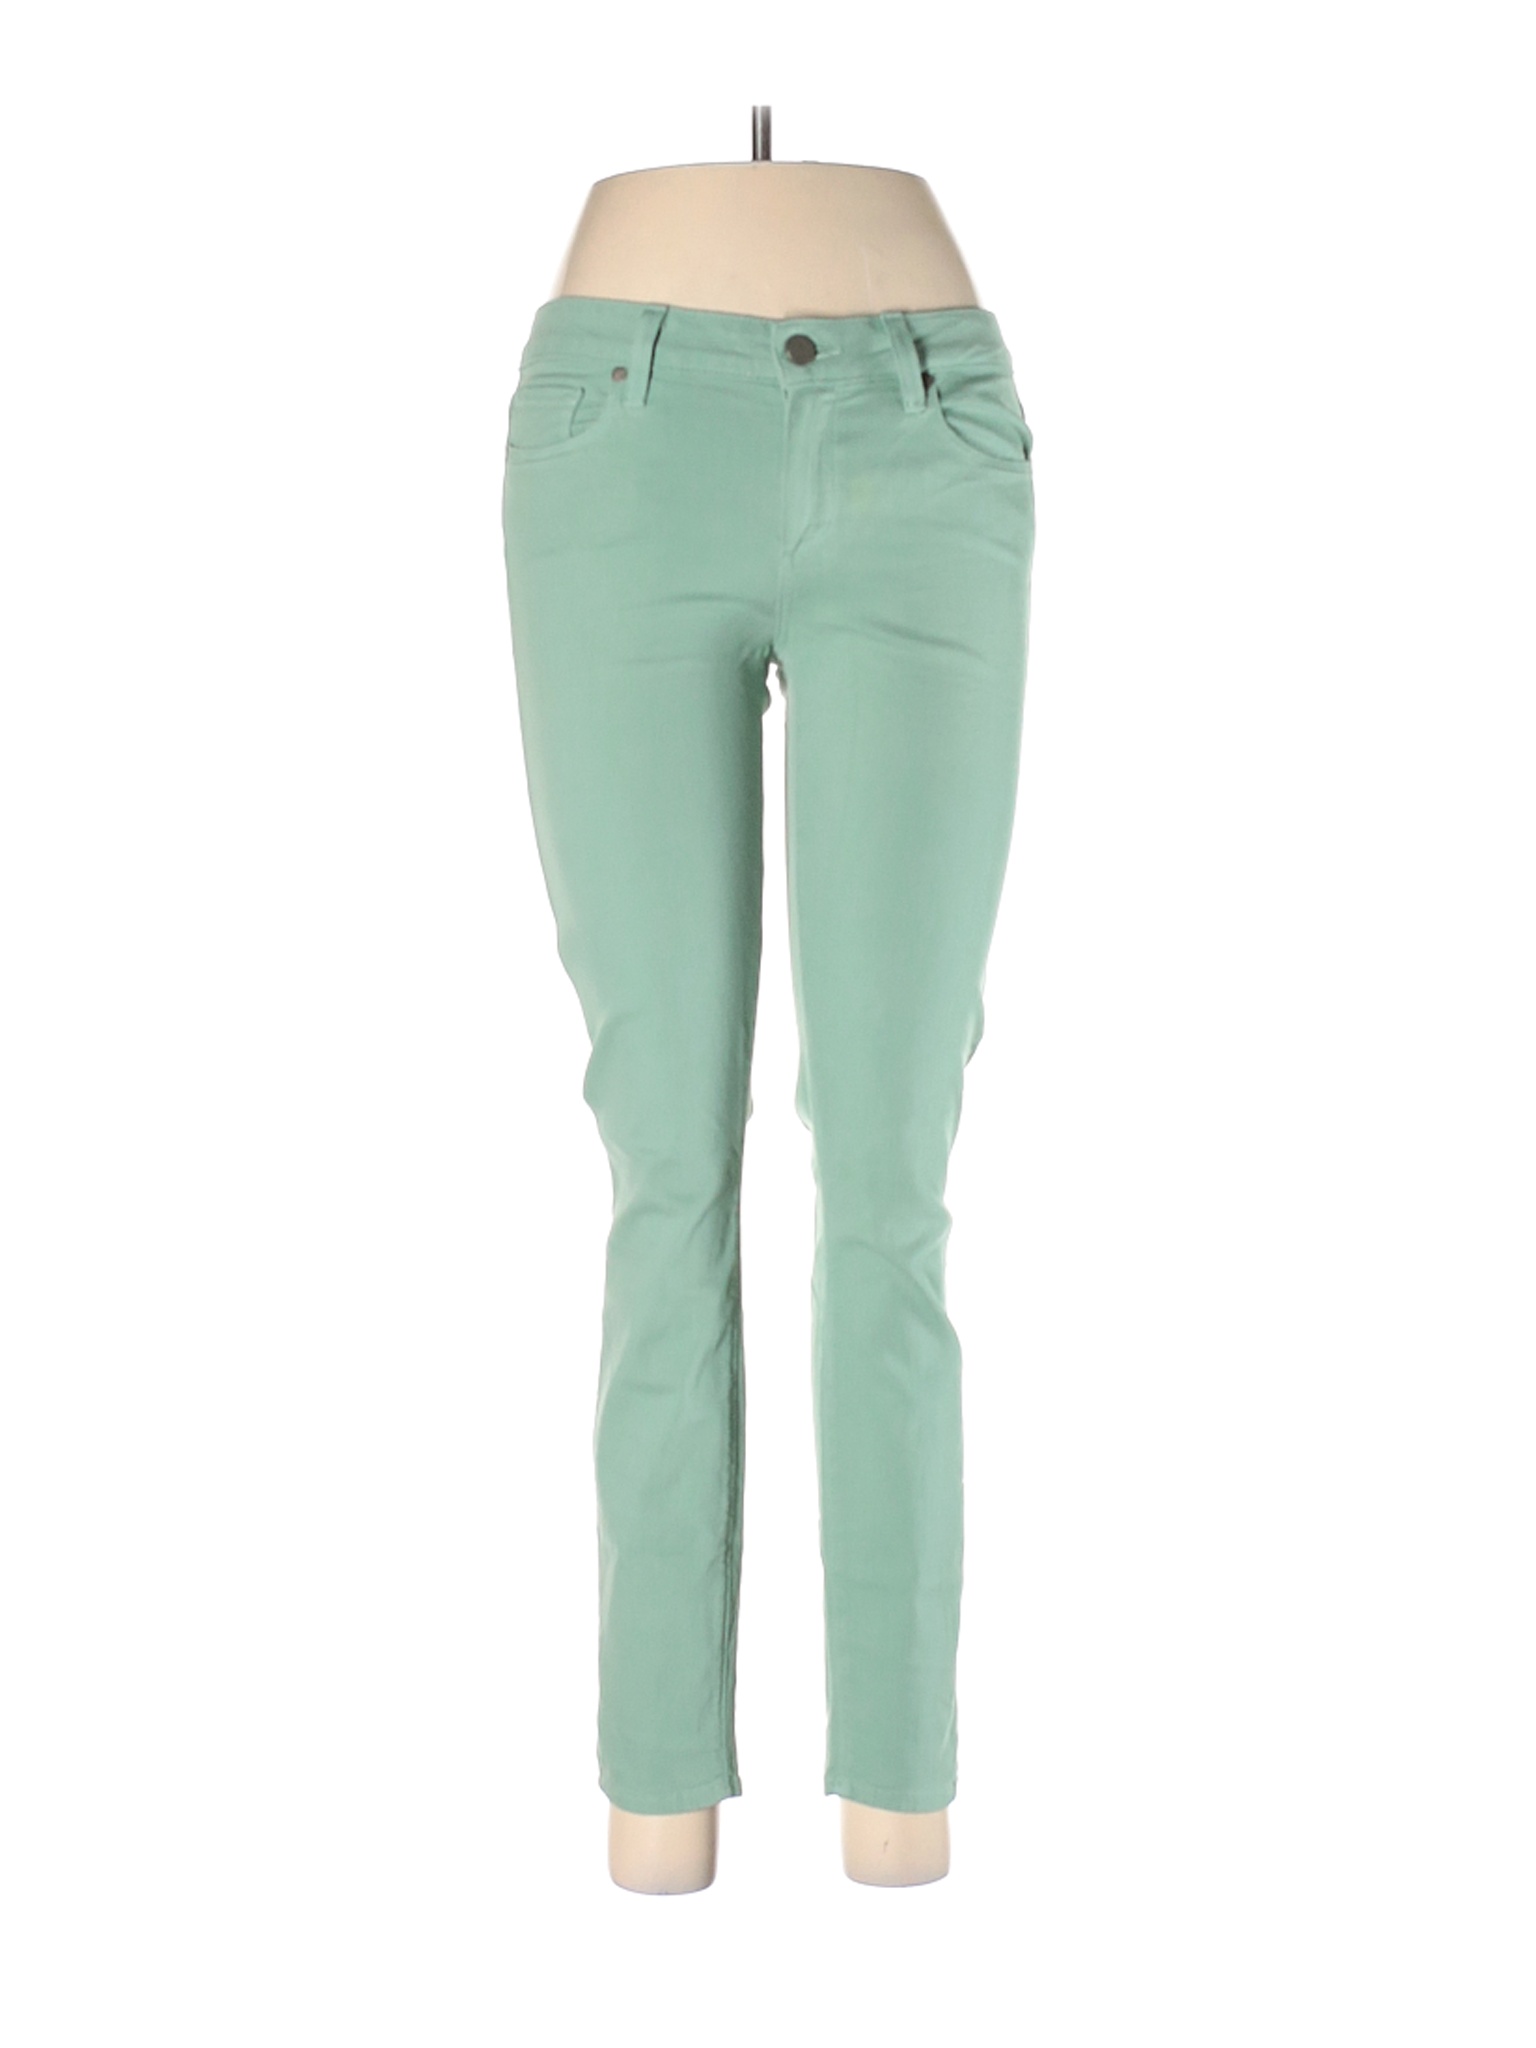 Paige Women Green Jeans 28W | eBay